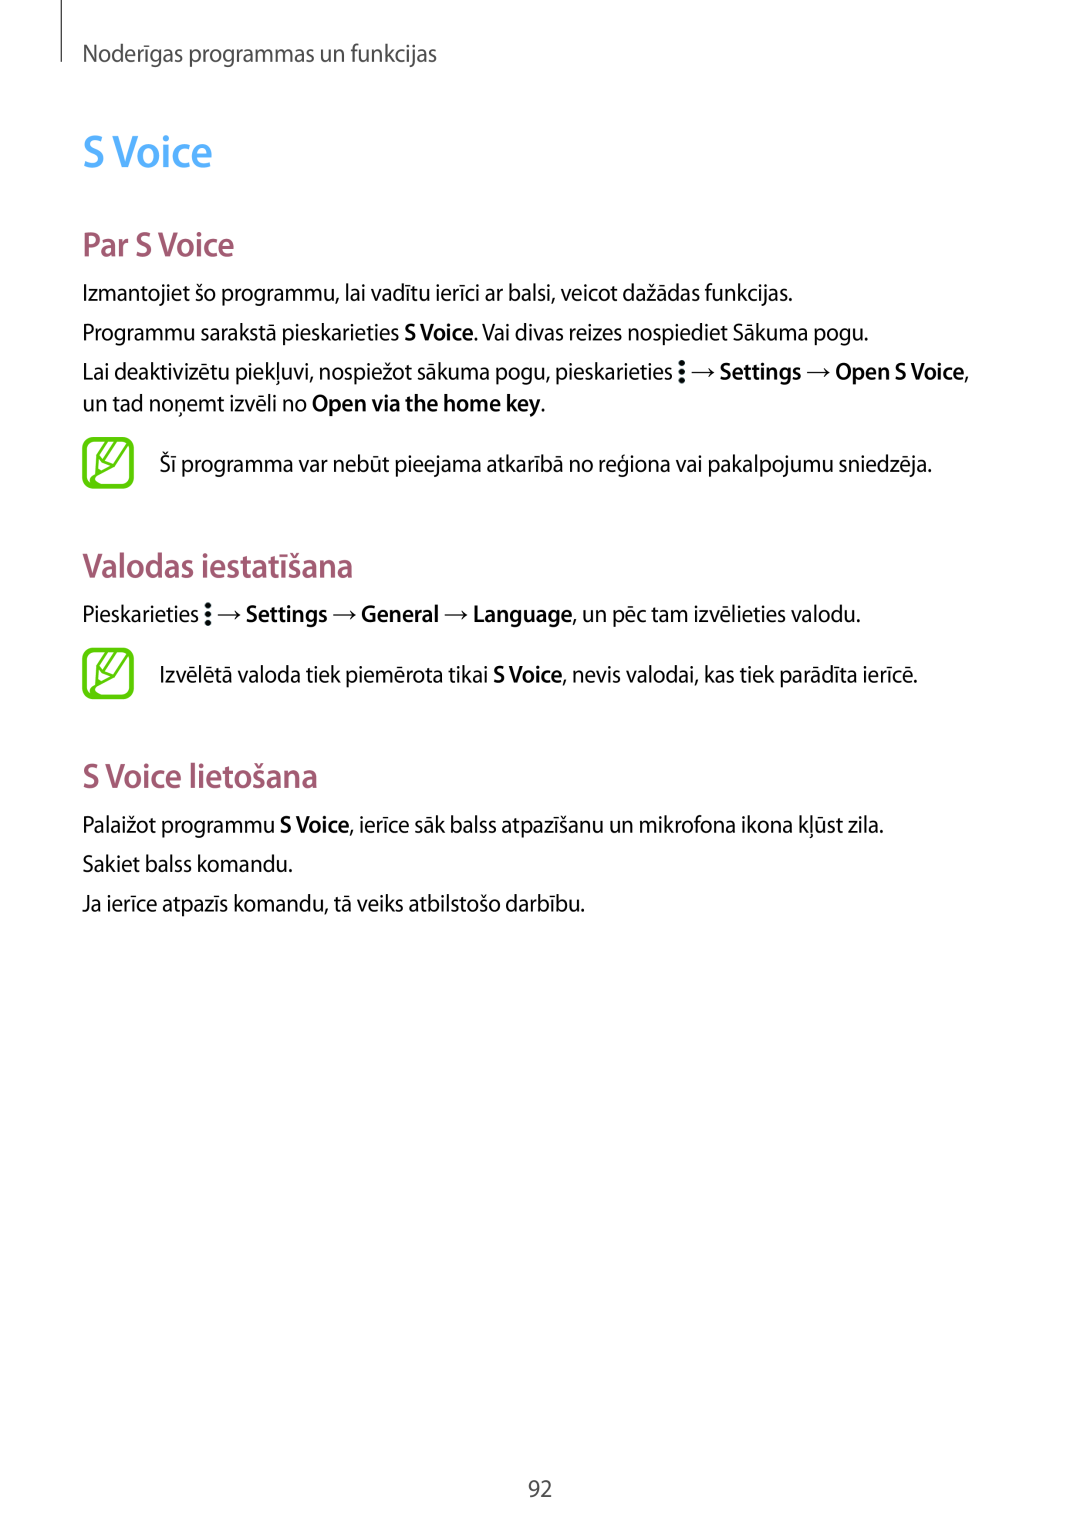 Samsung SM-T800NHAASEB manual Par S Voice, Valodas iestatīšana, S Voice lietošana, Noderīgas programmas un funkcijas 